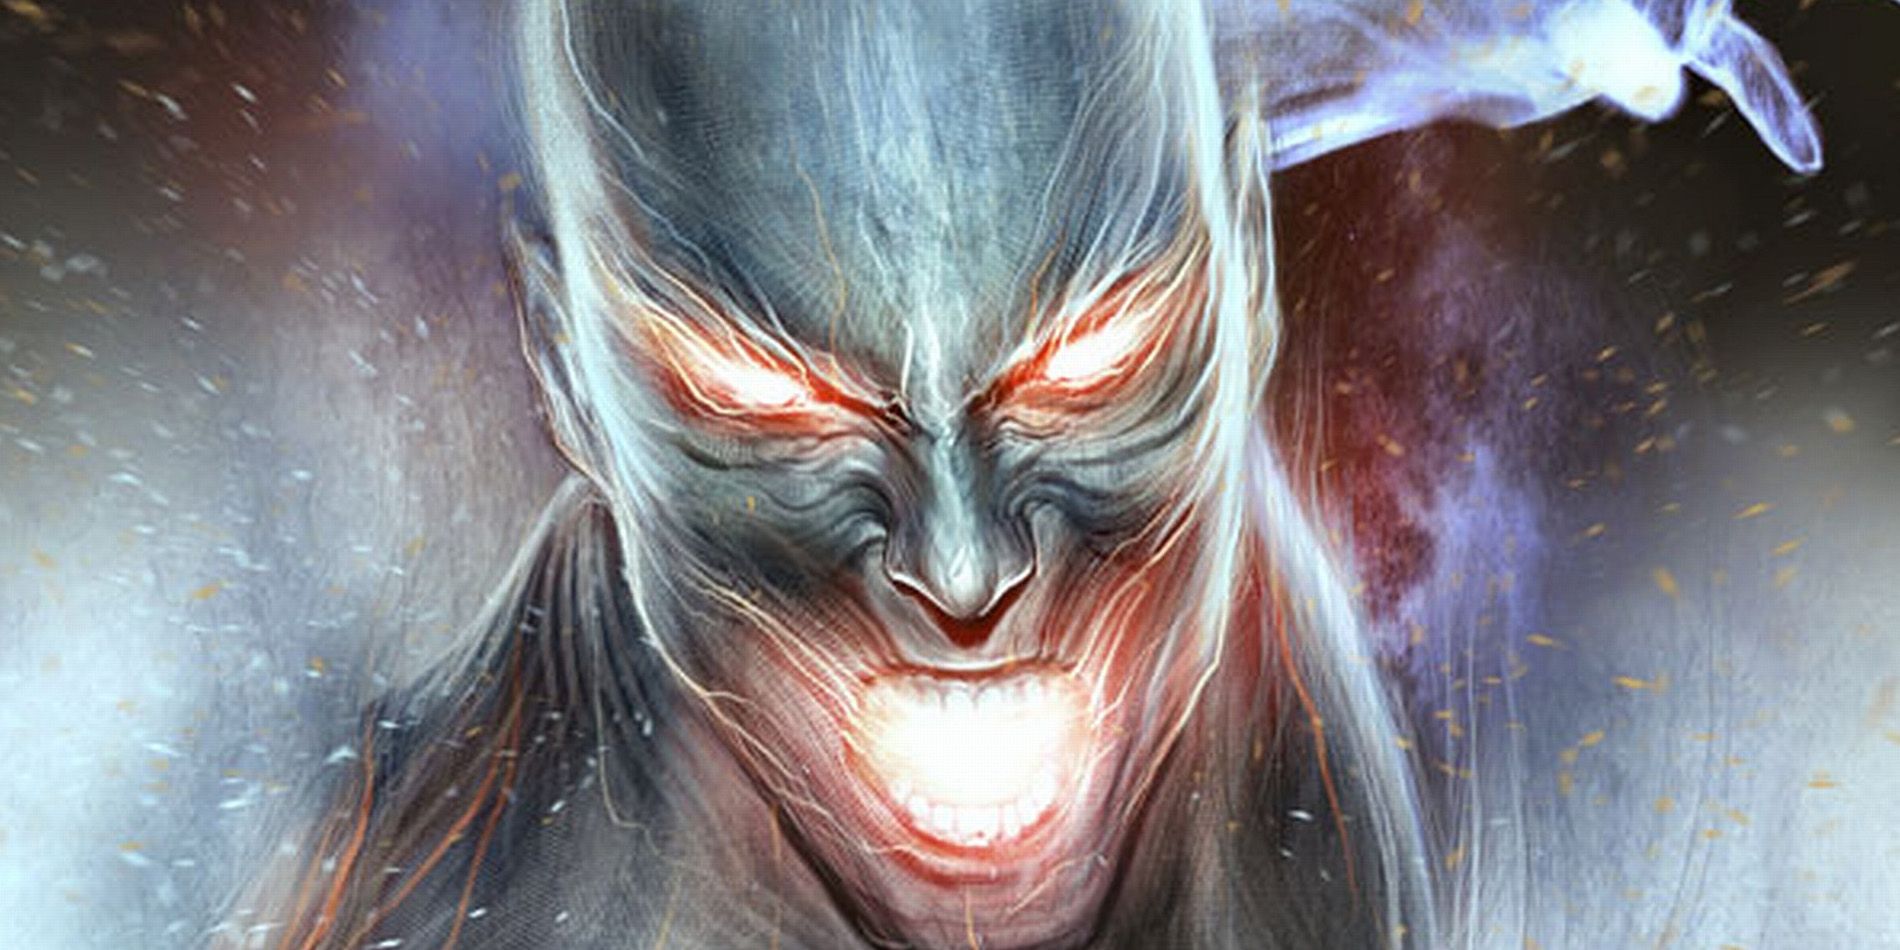 Proteus uses his powers in X-Men comics.